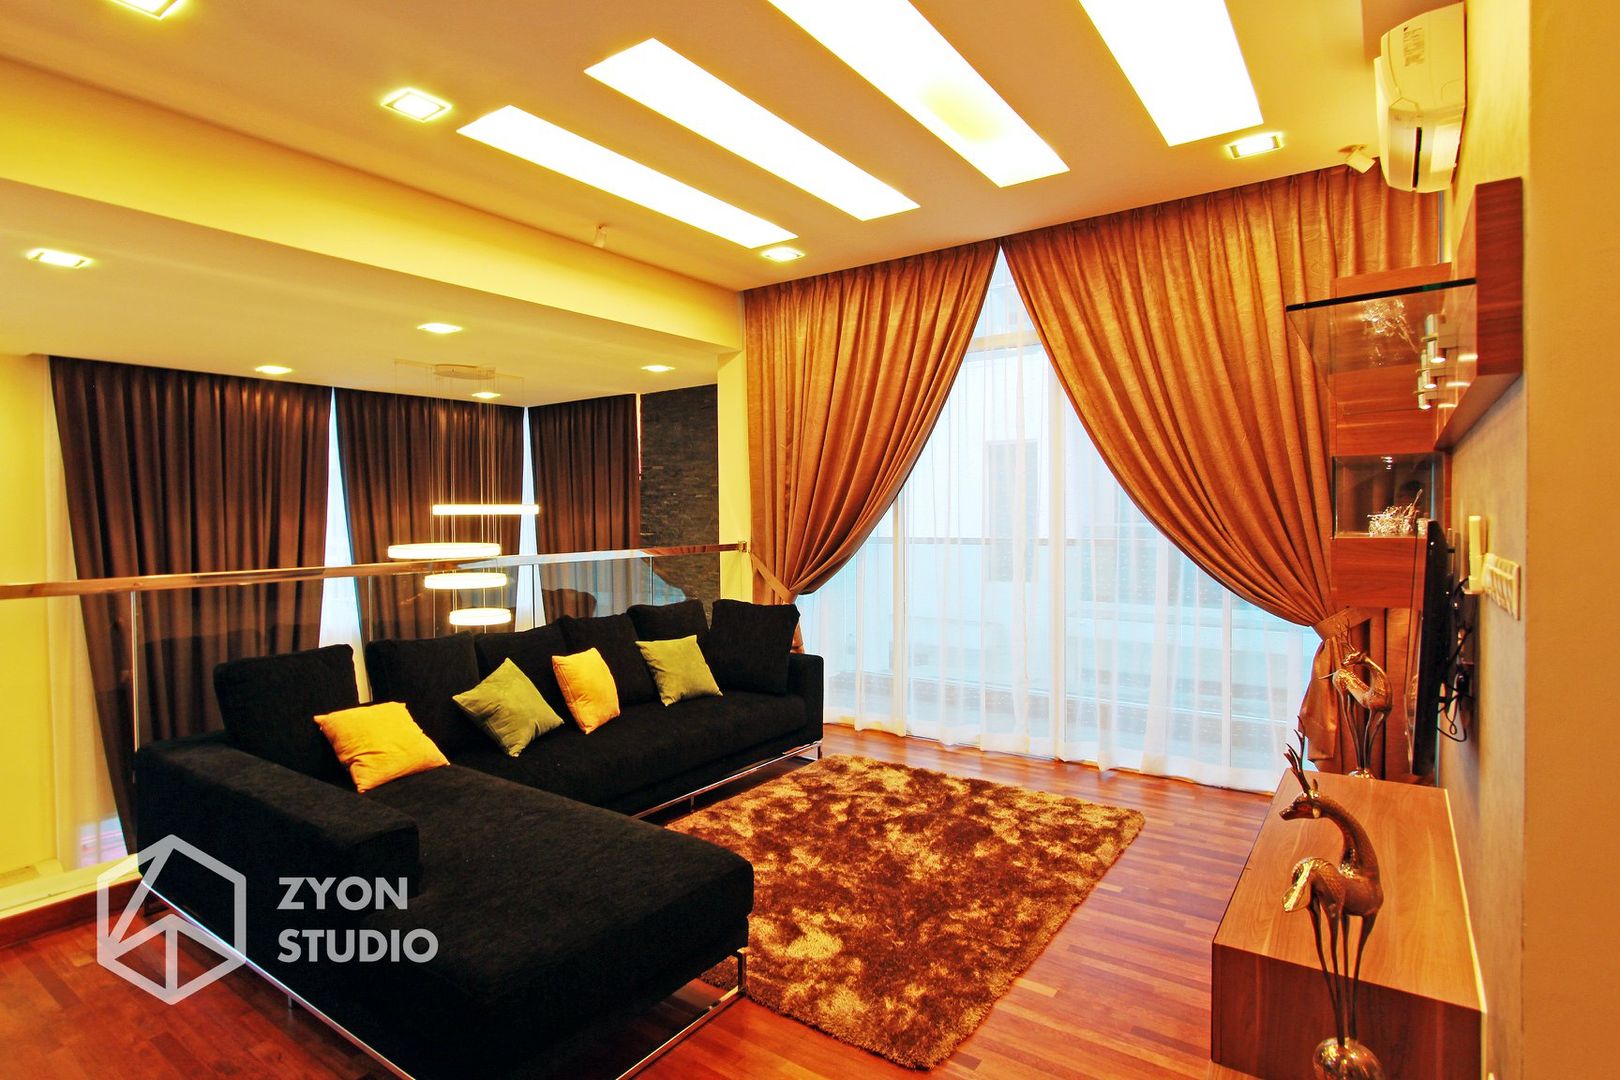 Kiara Residence Puchong, ZYON STUDIO SDN BHD (fka Zyon Interior Design Sdn Bhd) ZYON STUDIO SDN BHD (fka Zyon Interior Design Sdn Bhd) Livings modernos: Ideas, imágenes y decoración